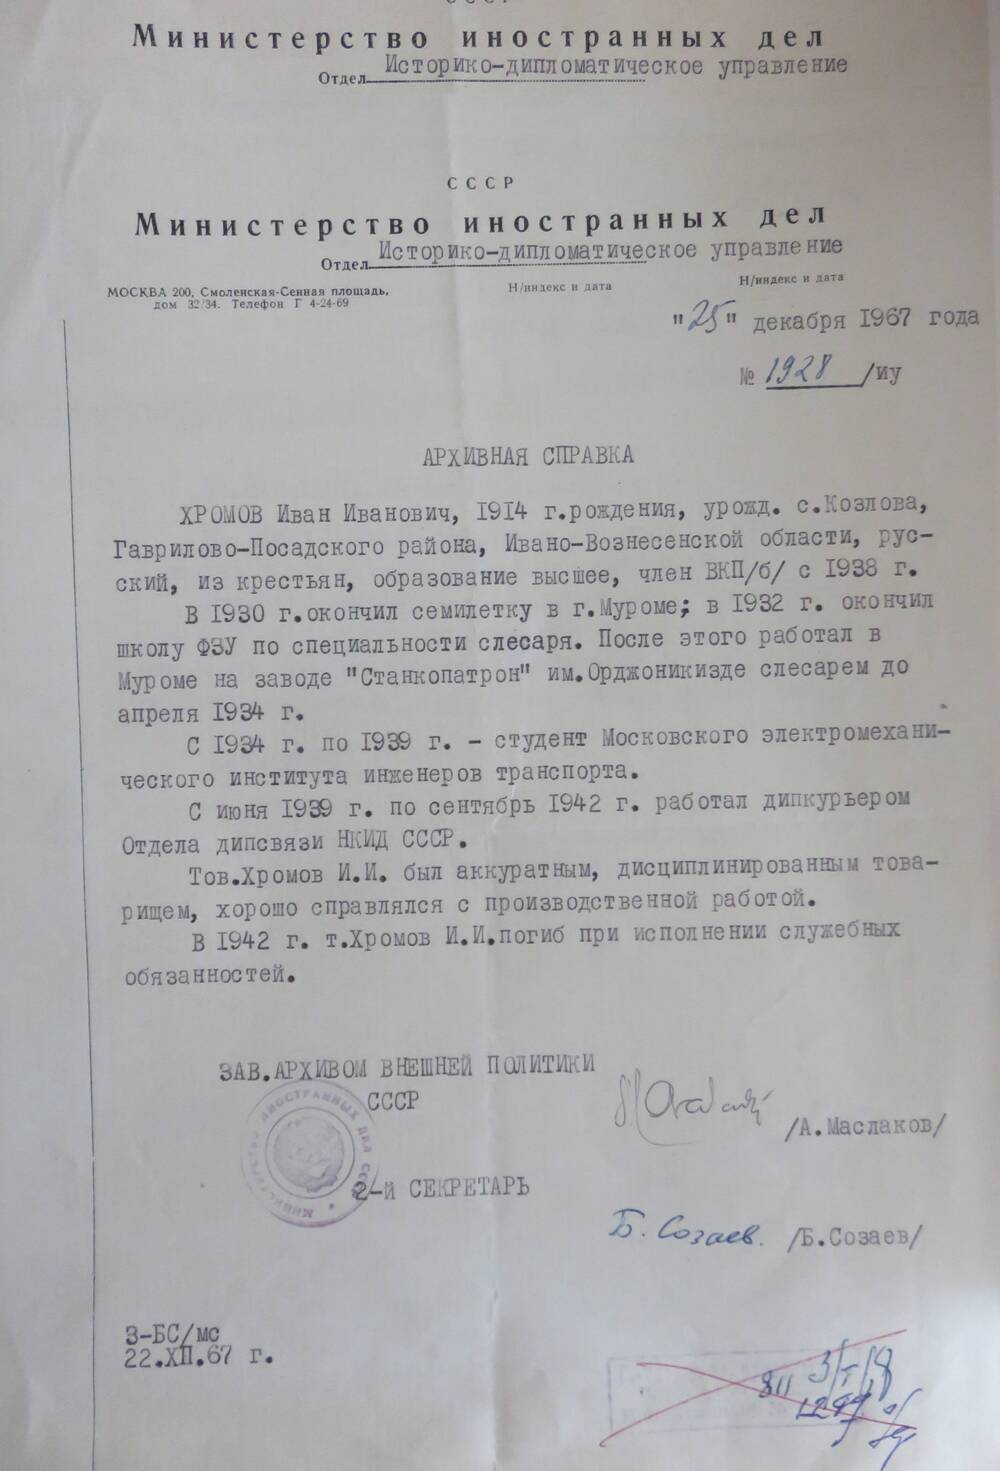 Архивная справка на Хромова Ивана Ивановича з № 1928/ИУ от 25.12.1967 г.